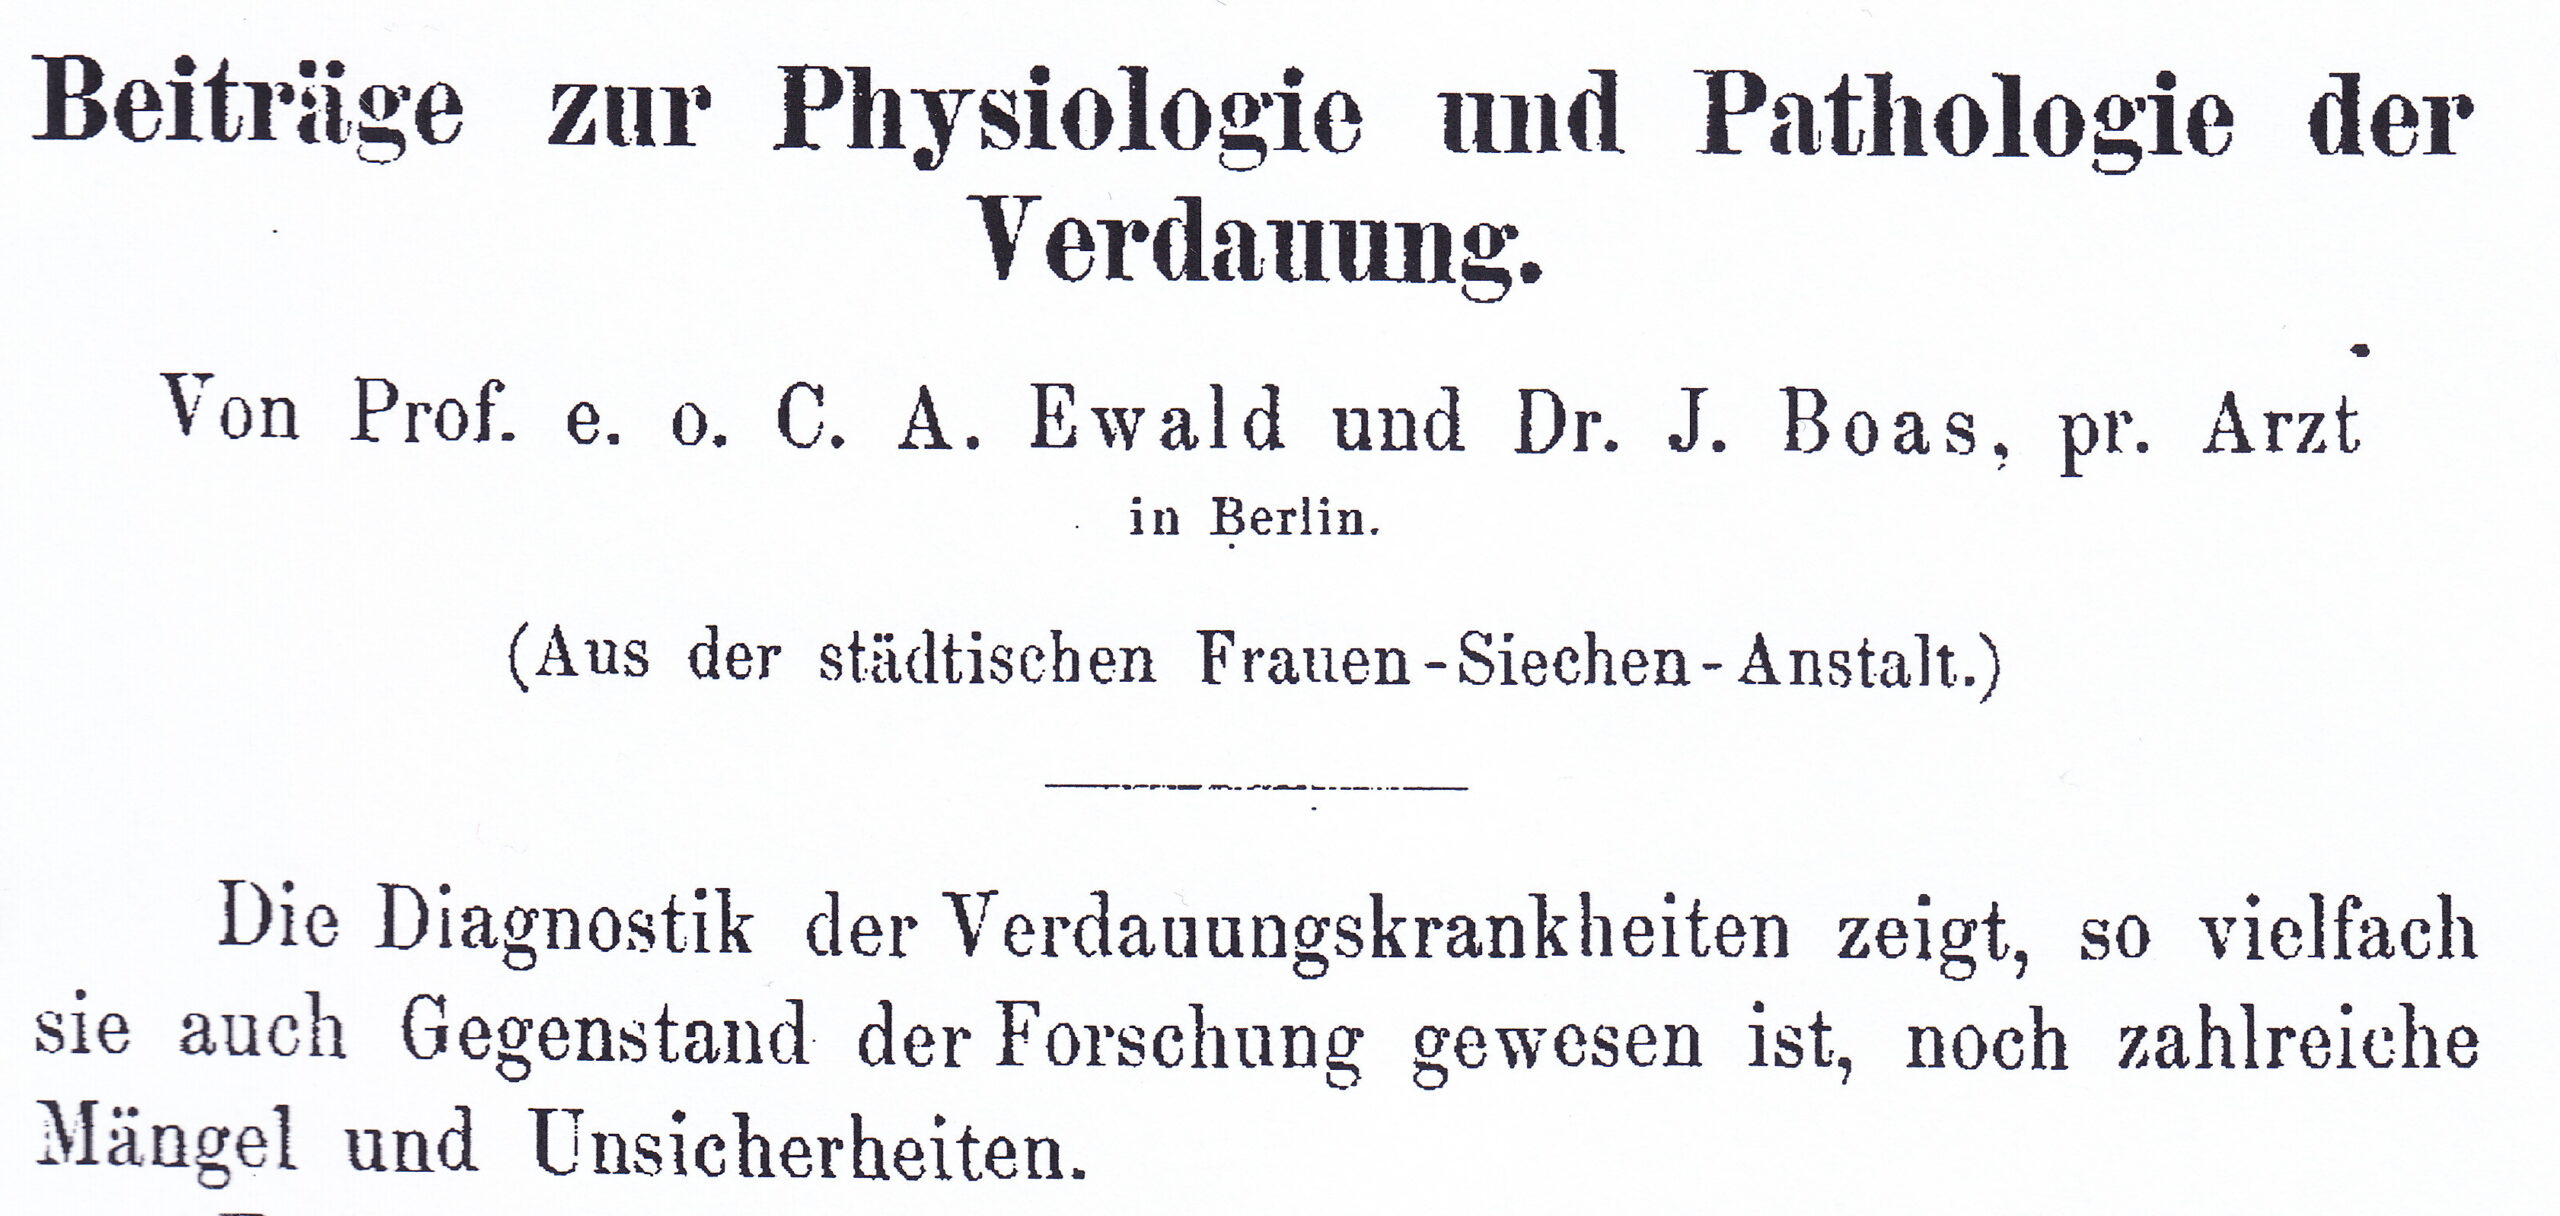 Archiv für Pathologische Anatomie und Physiologie und Klinische Medizin (Virchows Archiv), 1885/86, Archiv H Je